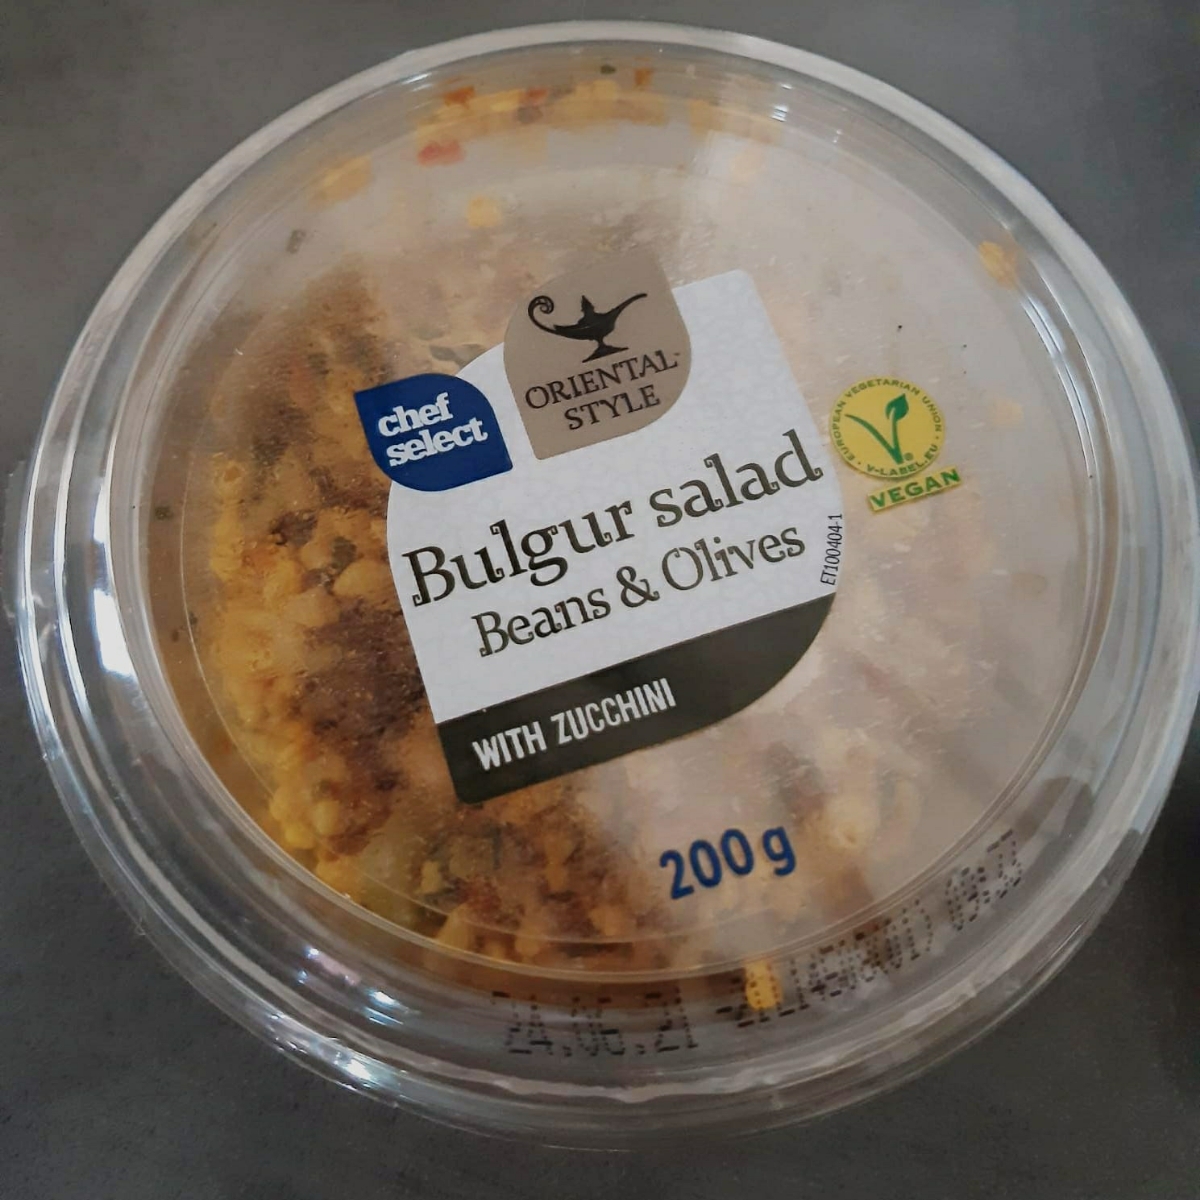 Chef | abillion Select Review Bulgur Salad